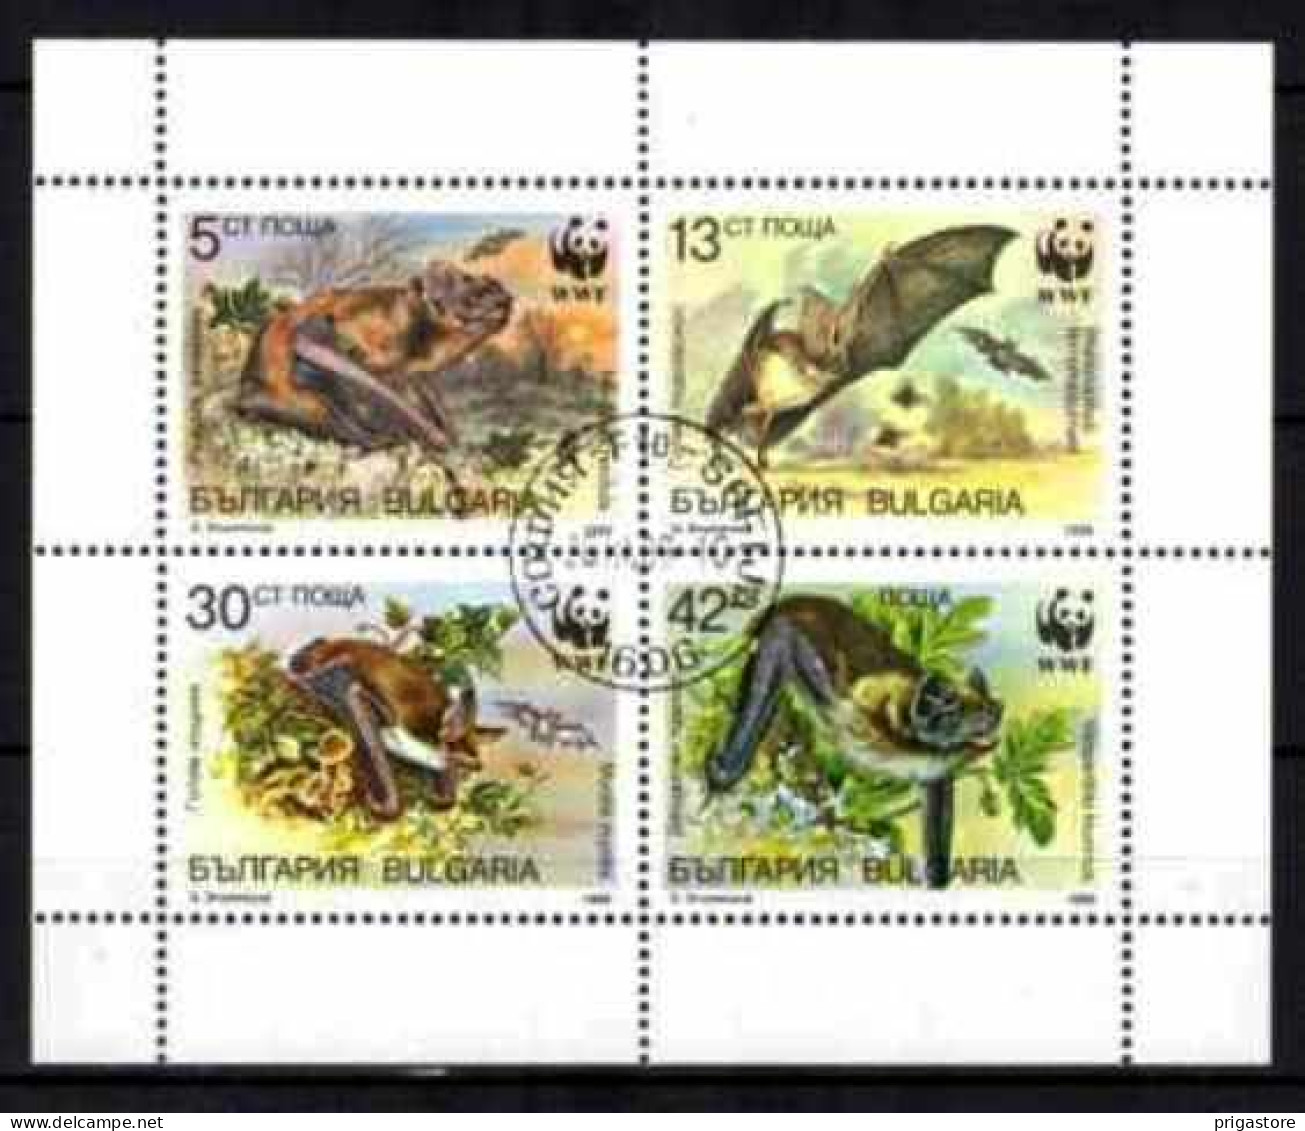 Animaux Chauve-Souris Bulgarie 1989 (55) Yvert N° 3231 à 3234 Oblitéré Used - Vleermuizen